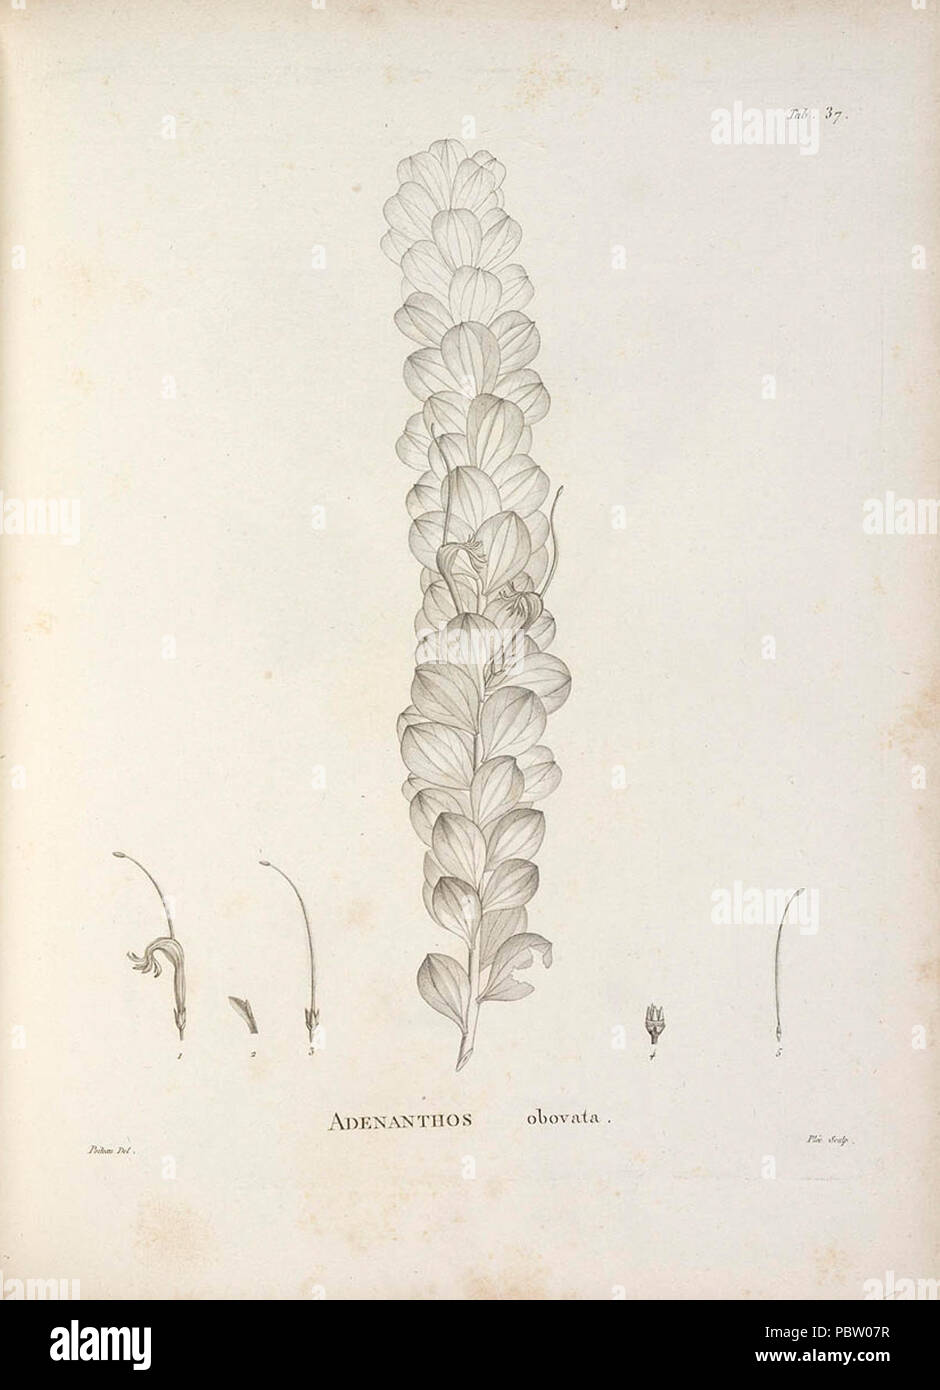 Adenanthos obovatus Poiteau. Stock Photo